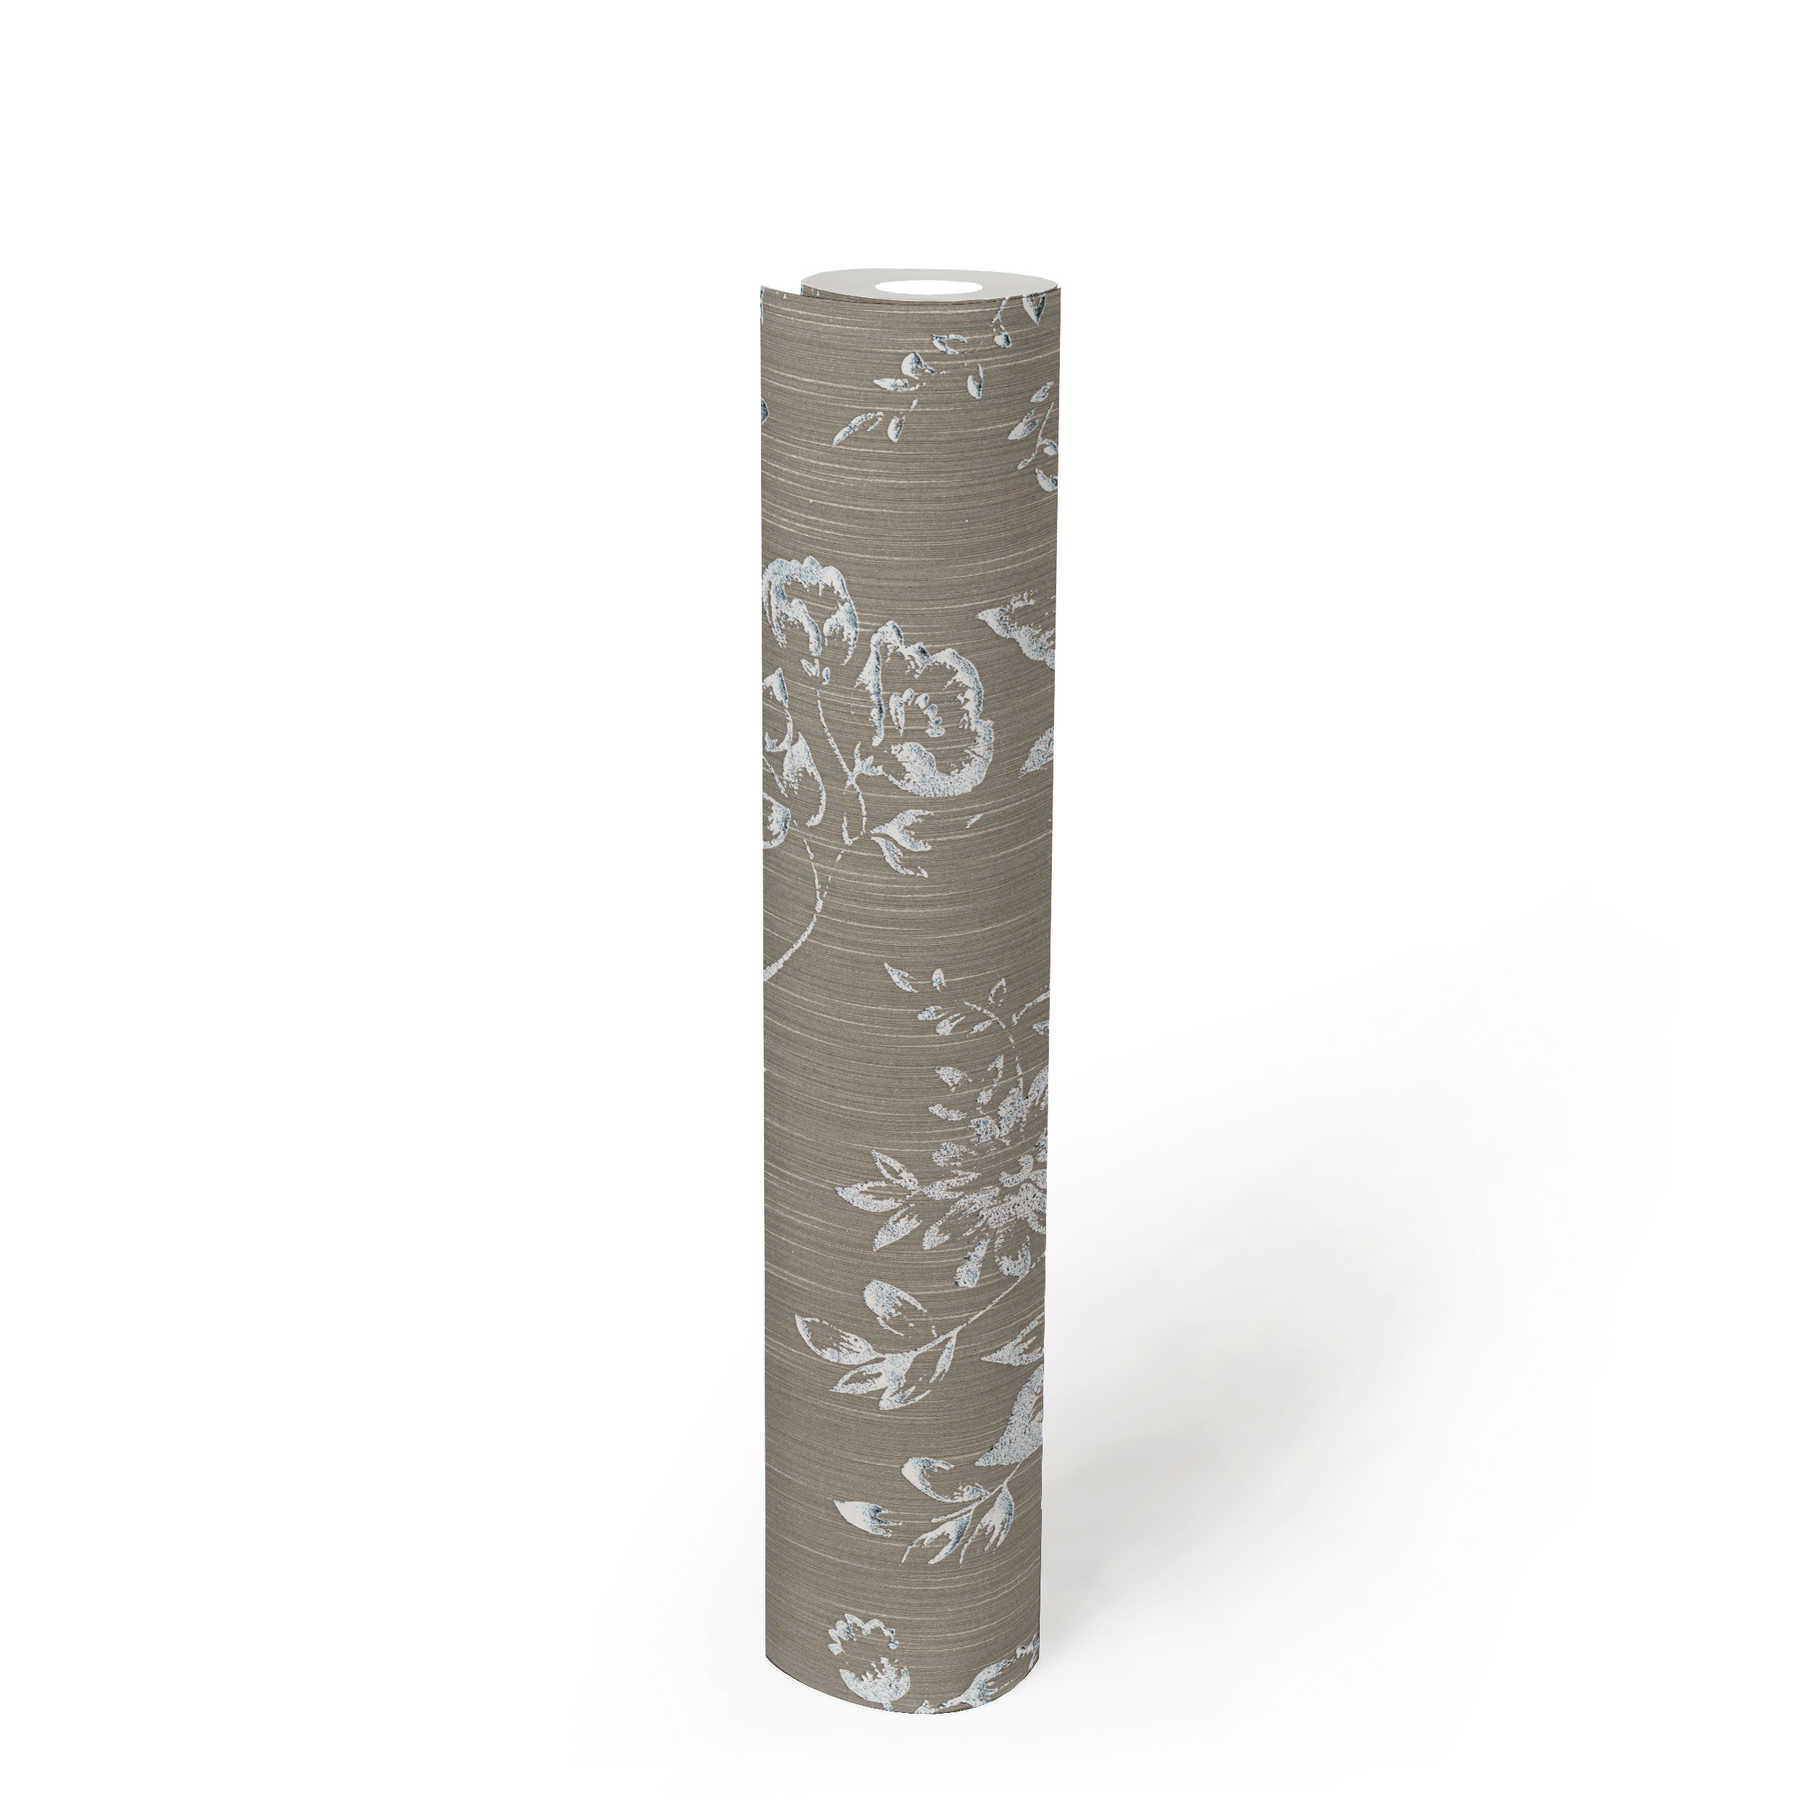             Strukturtapete mit silbernem Blütenmuster – Silber, Braun
        